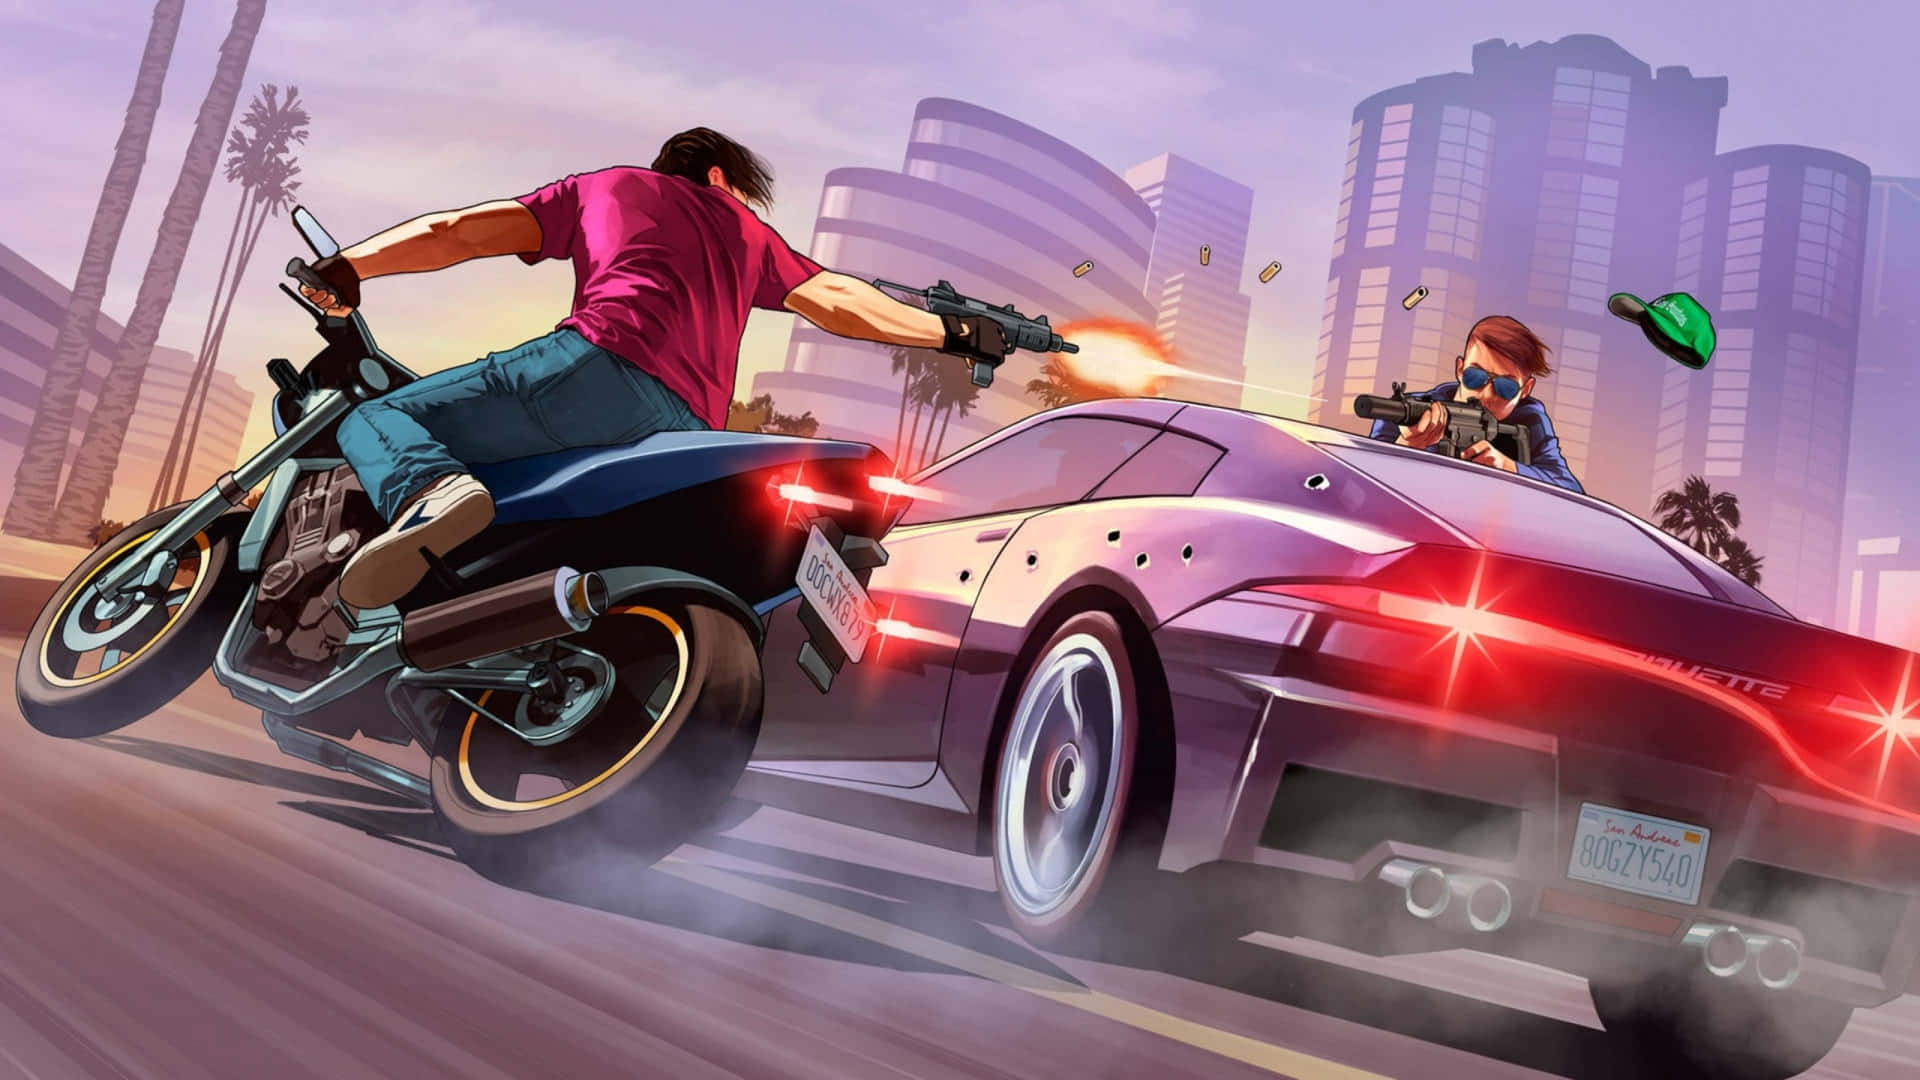 Erlebedie Aufregende Welt Von Grand Theft Auto 5 In Hoher Auflösung Bei 2560x1440. Wallpaper